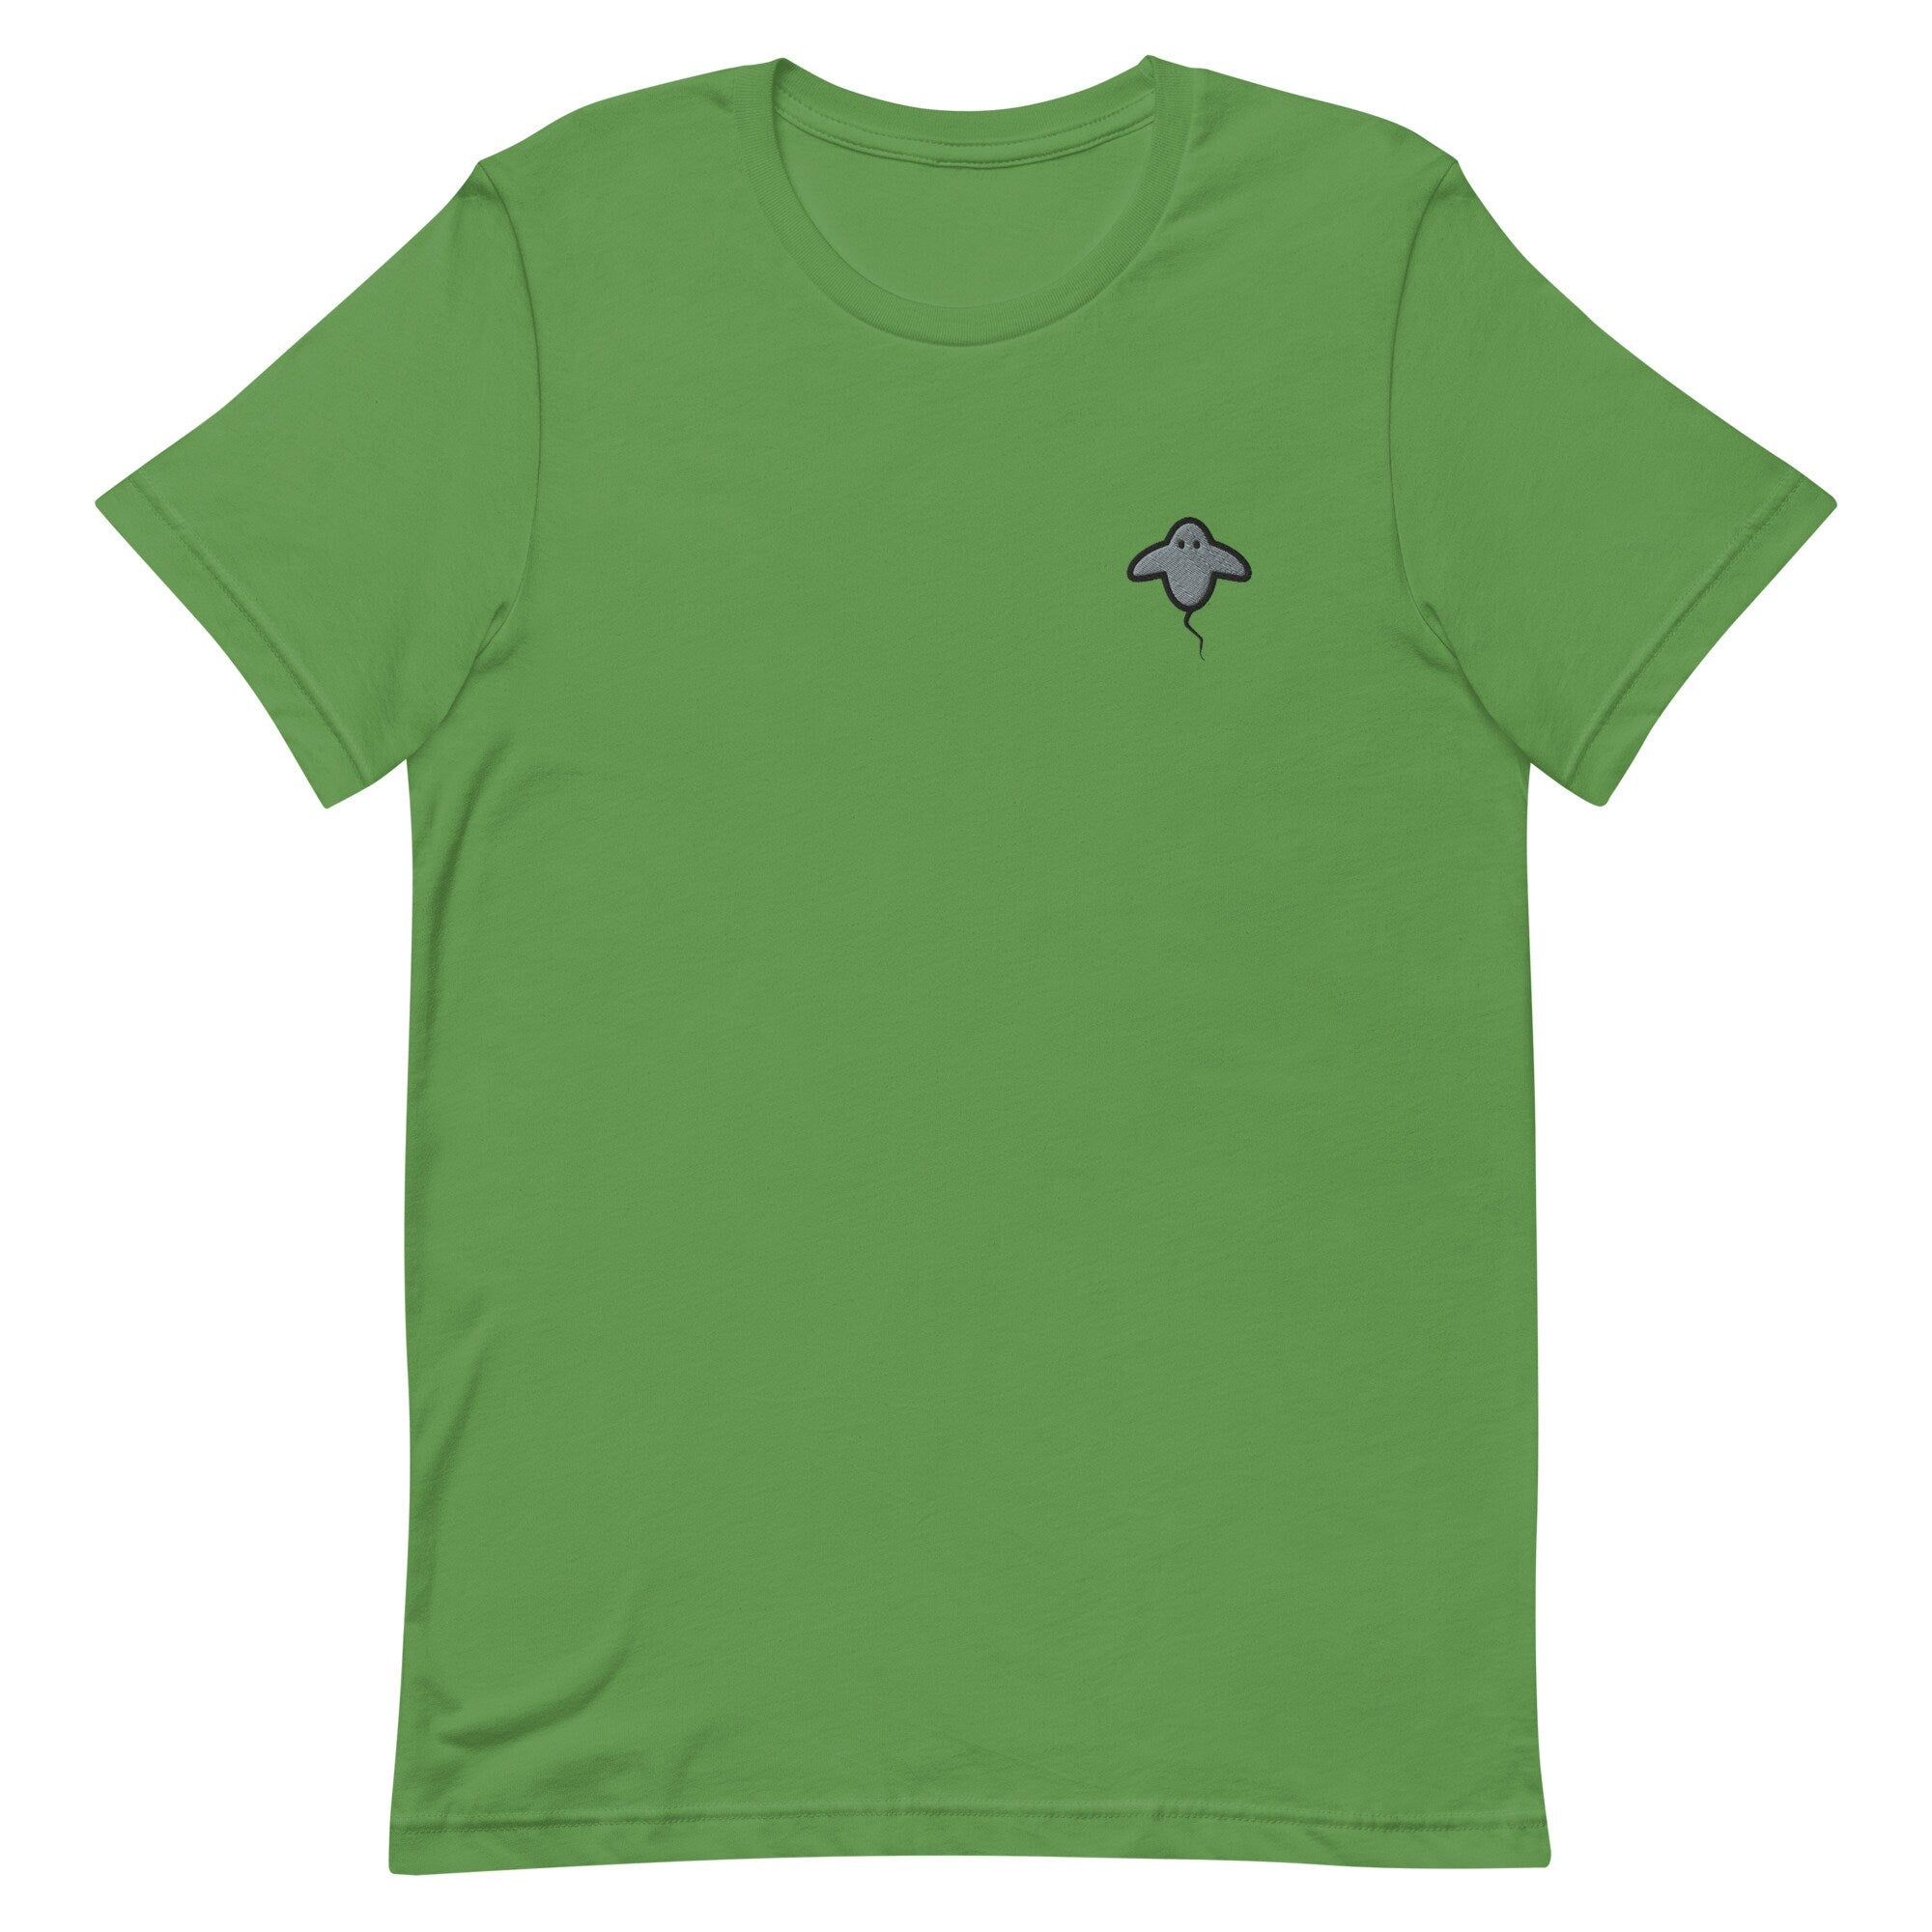 Stingray Premium Men's T-Shirt, Embroidered Men's T-Shirt Gift for Boyfriend, Men's Short Sleeve Shirt - Multiple Colors